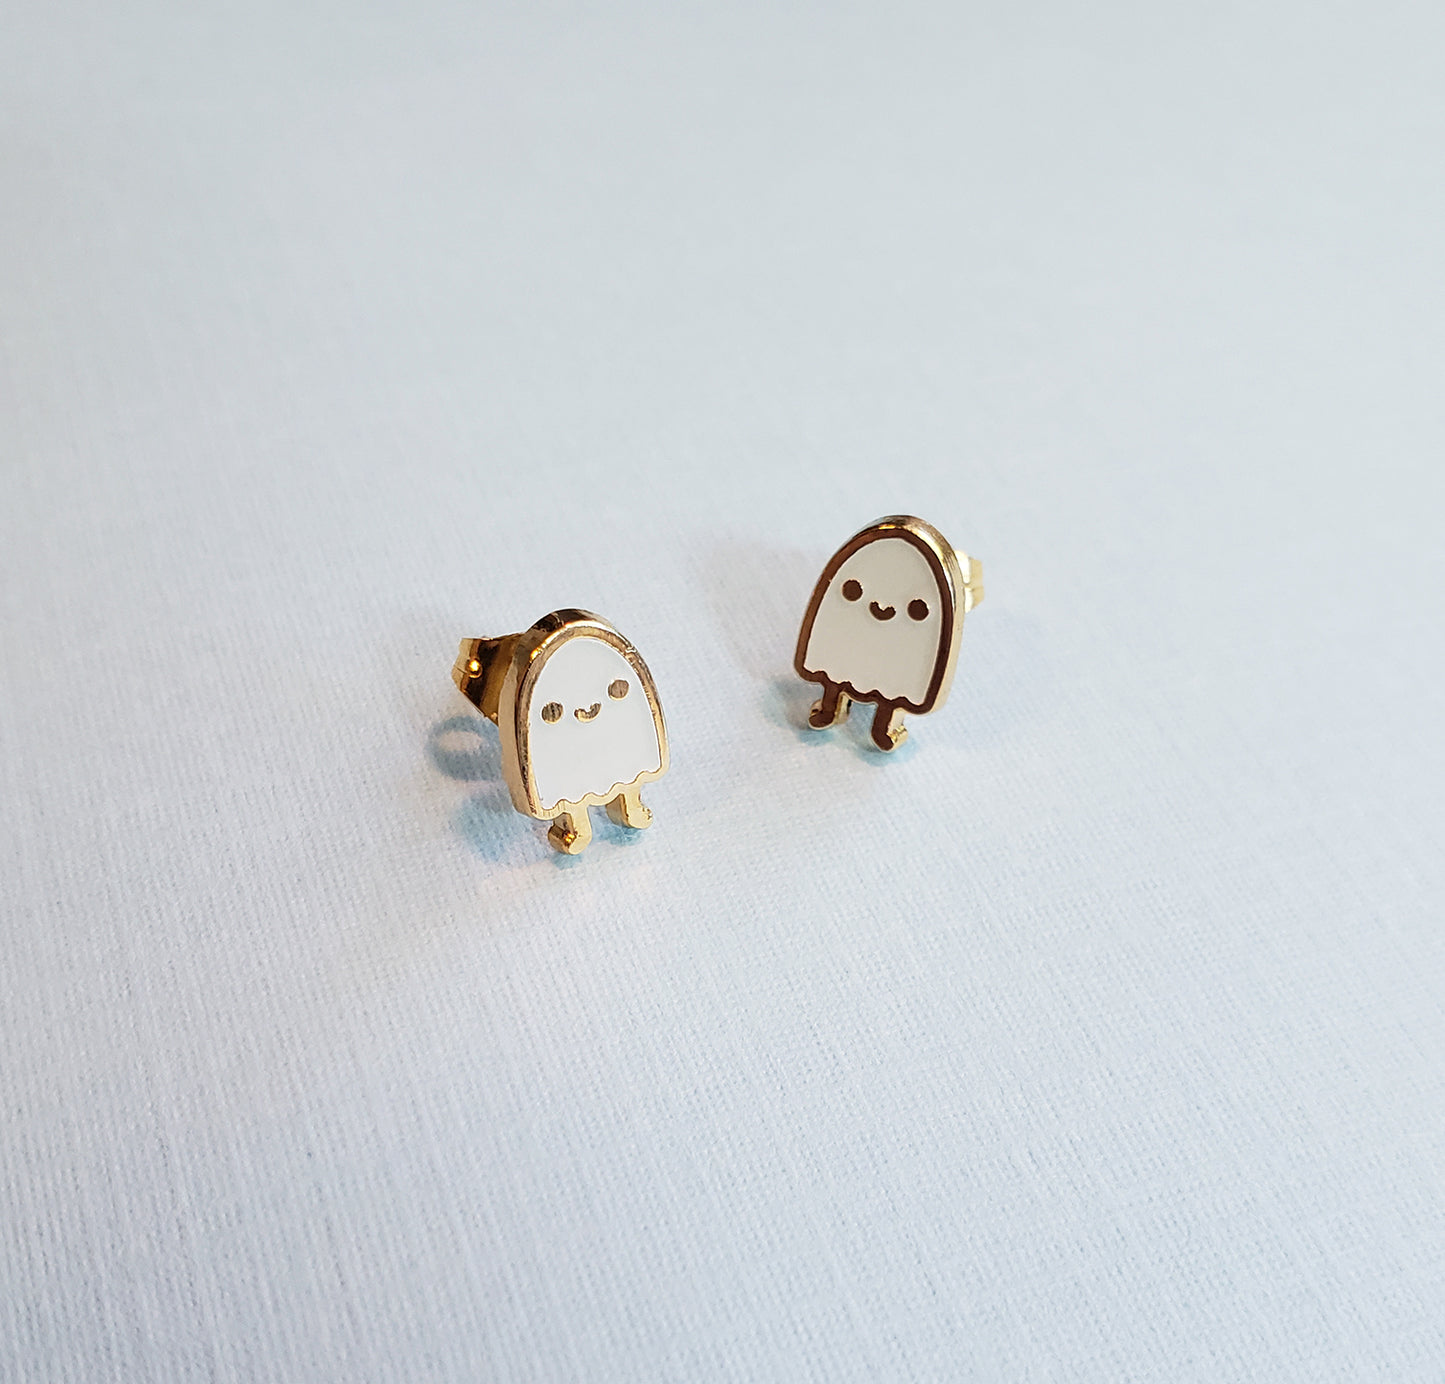 Glow Ghost earrings